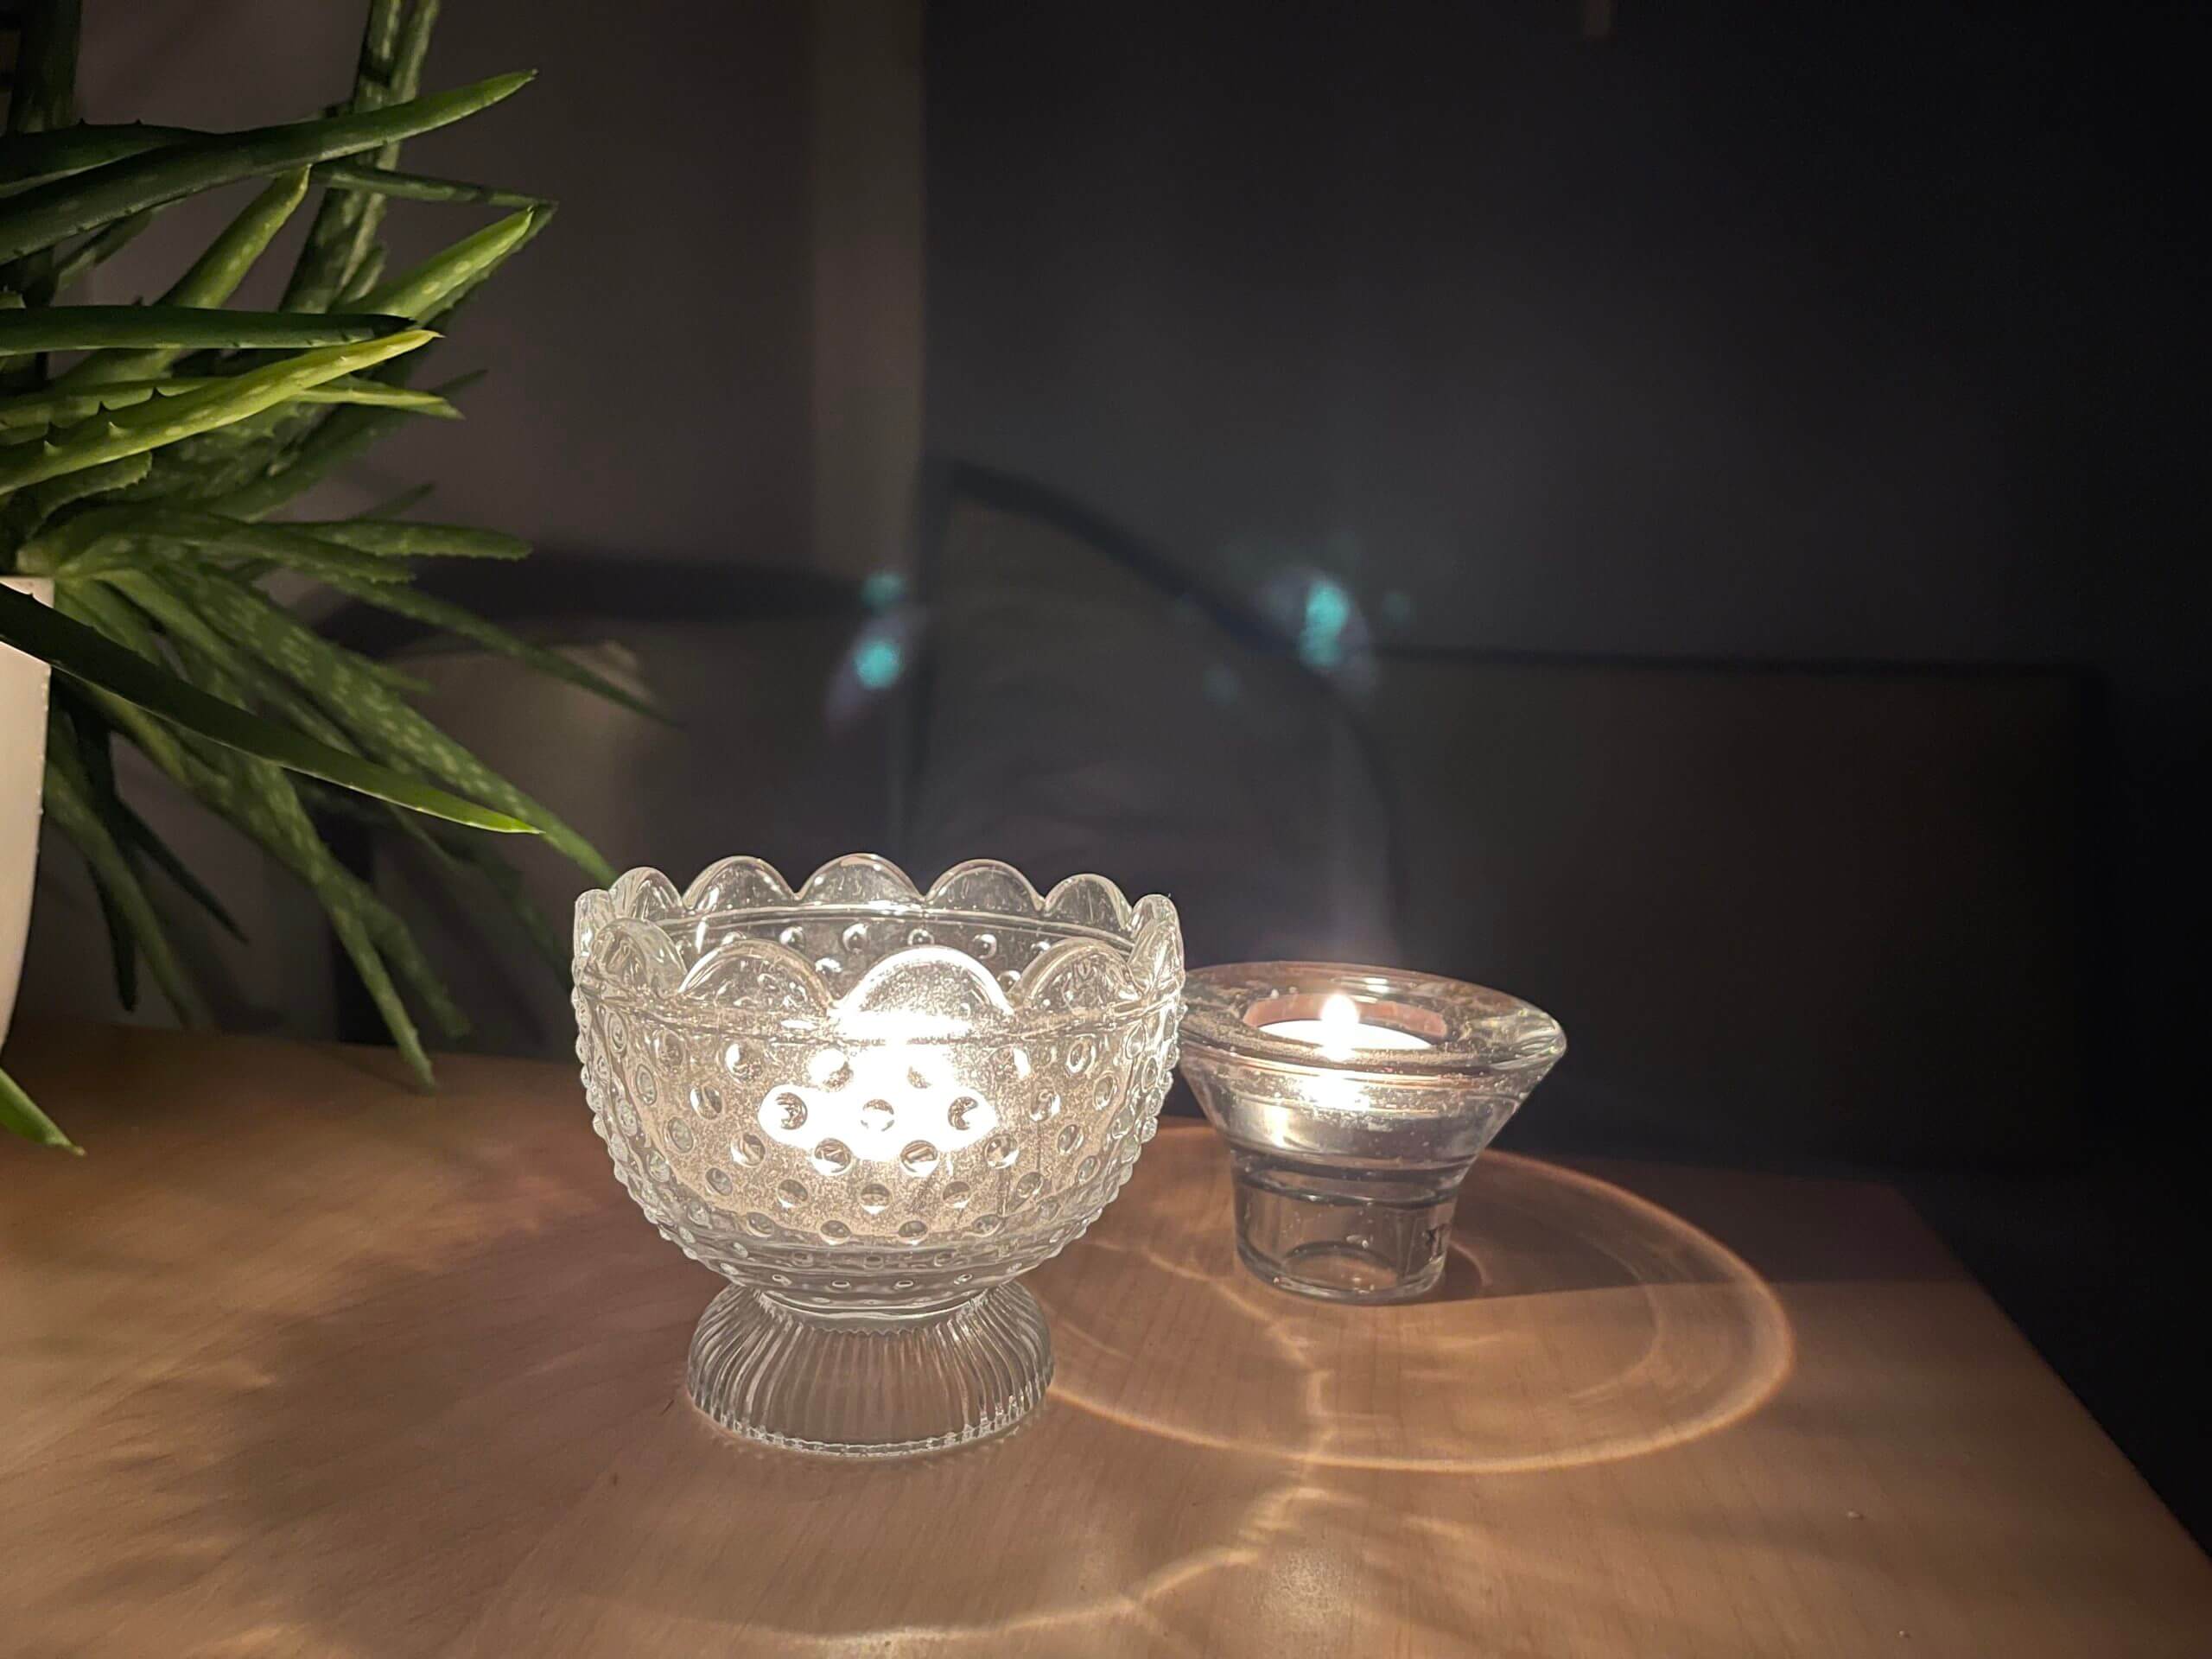 2 Teelichter stehen auf einem Tisch neben einer Pflanze im Dunklen